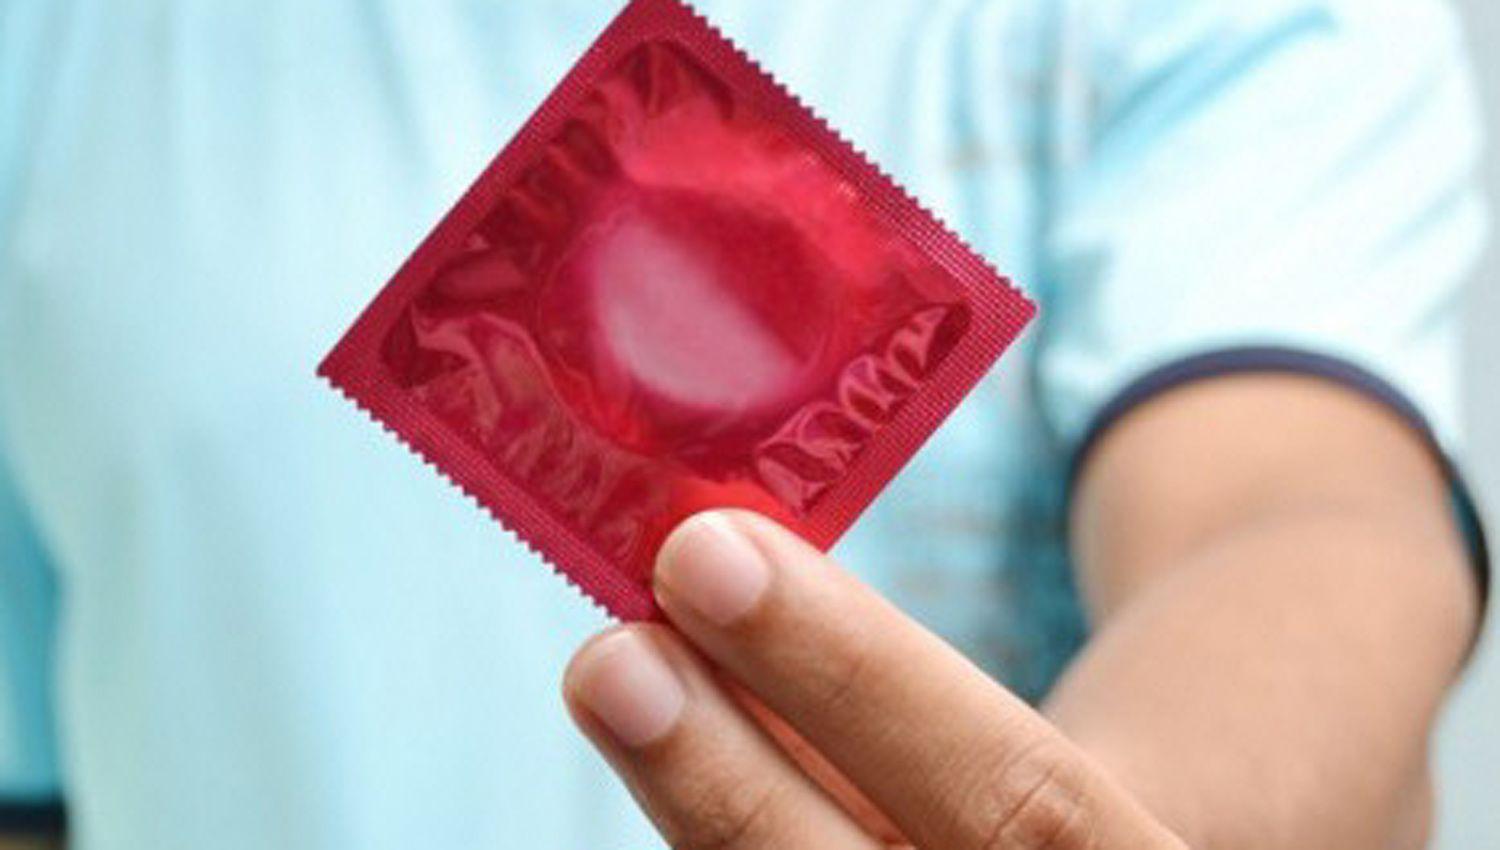 Maacutes del 60-en-porciento- de las personas no tuvieron acceso a preservativos gratuitos durante la cuarentena